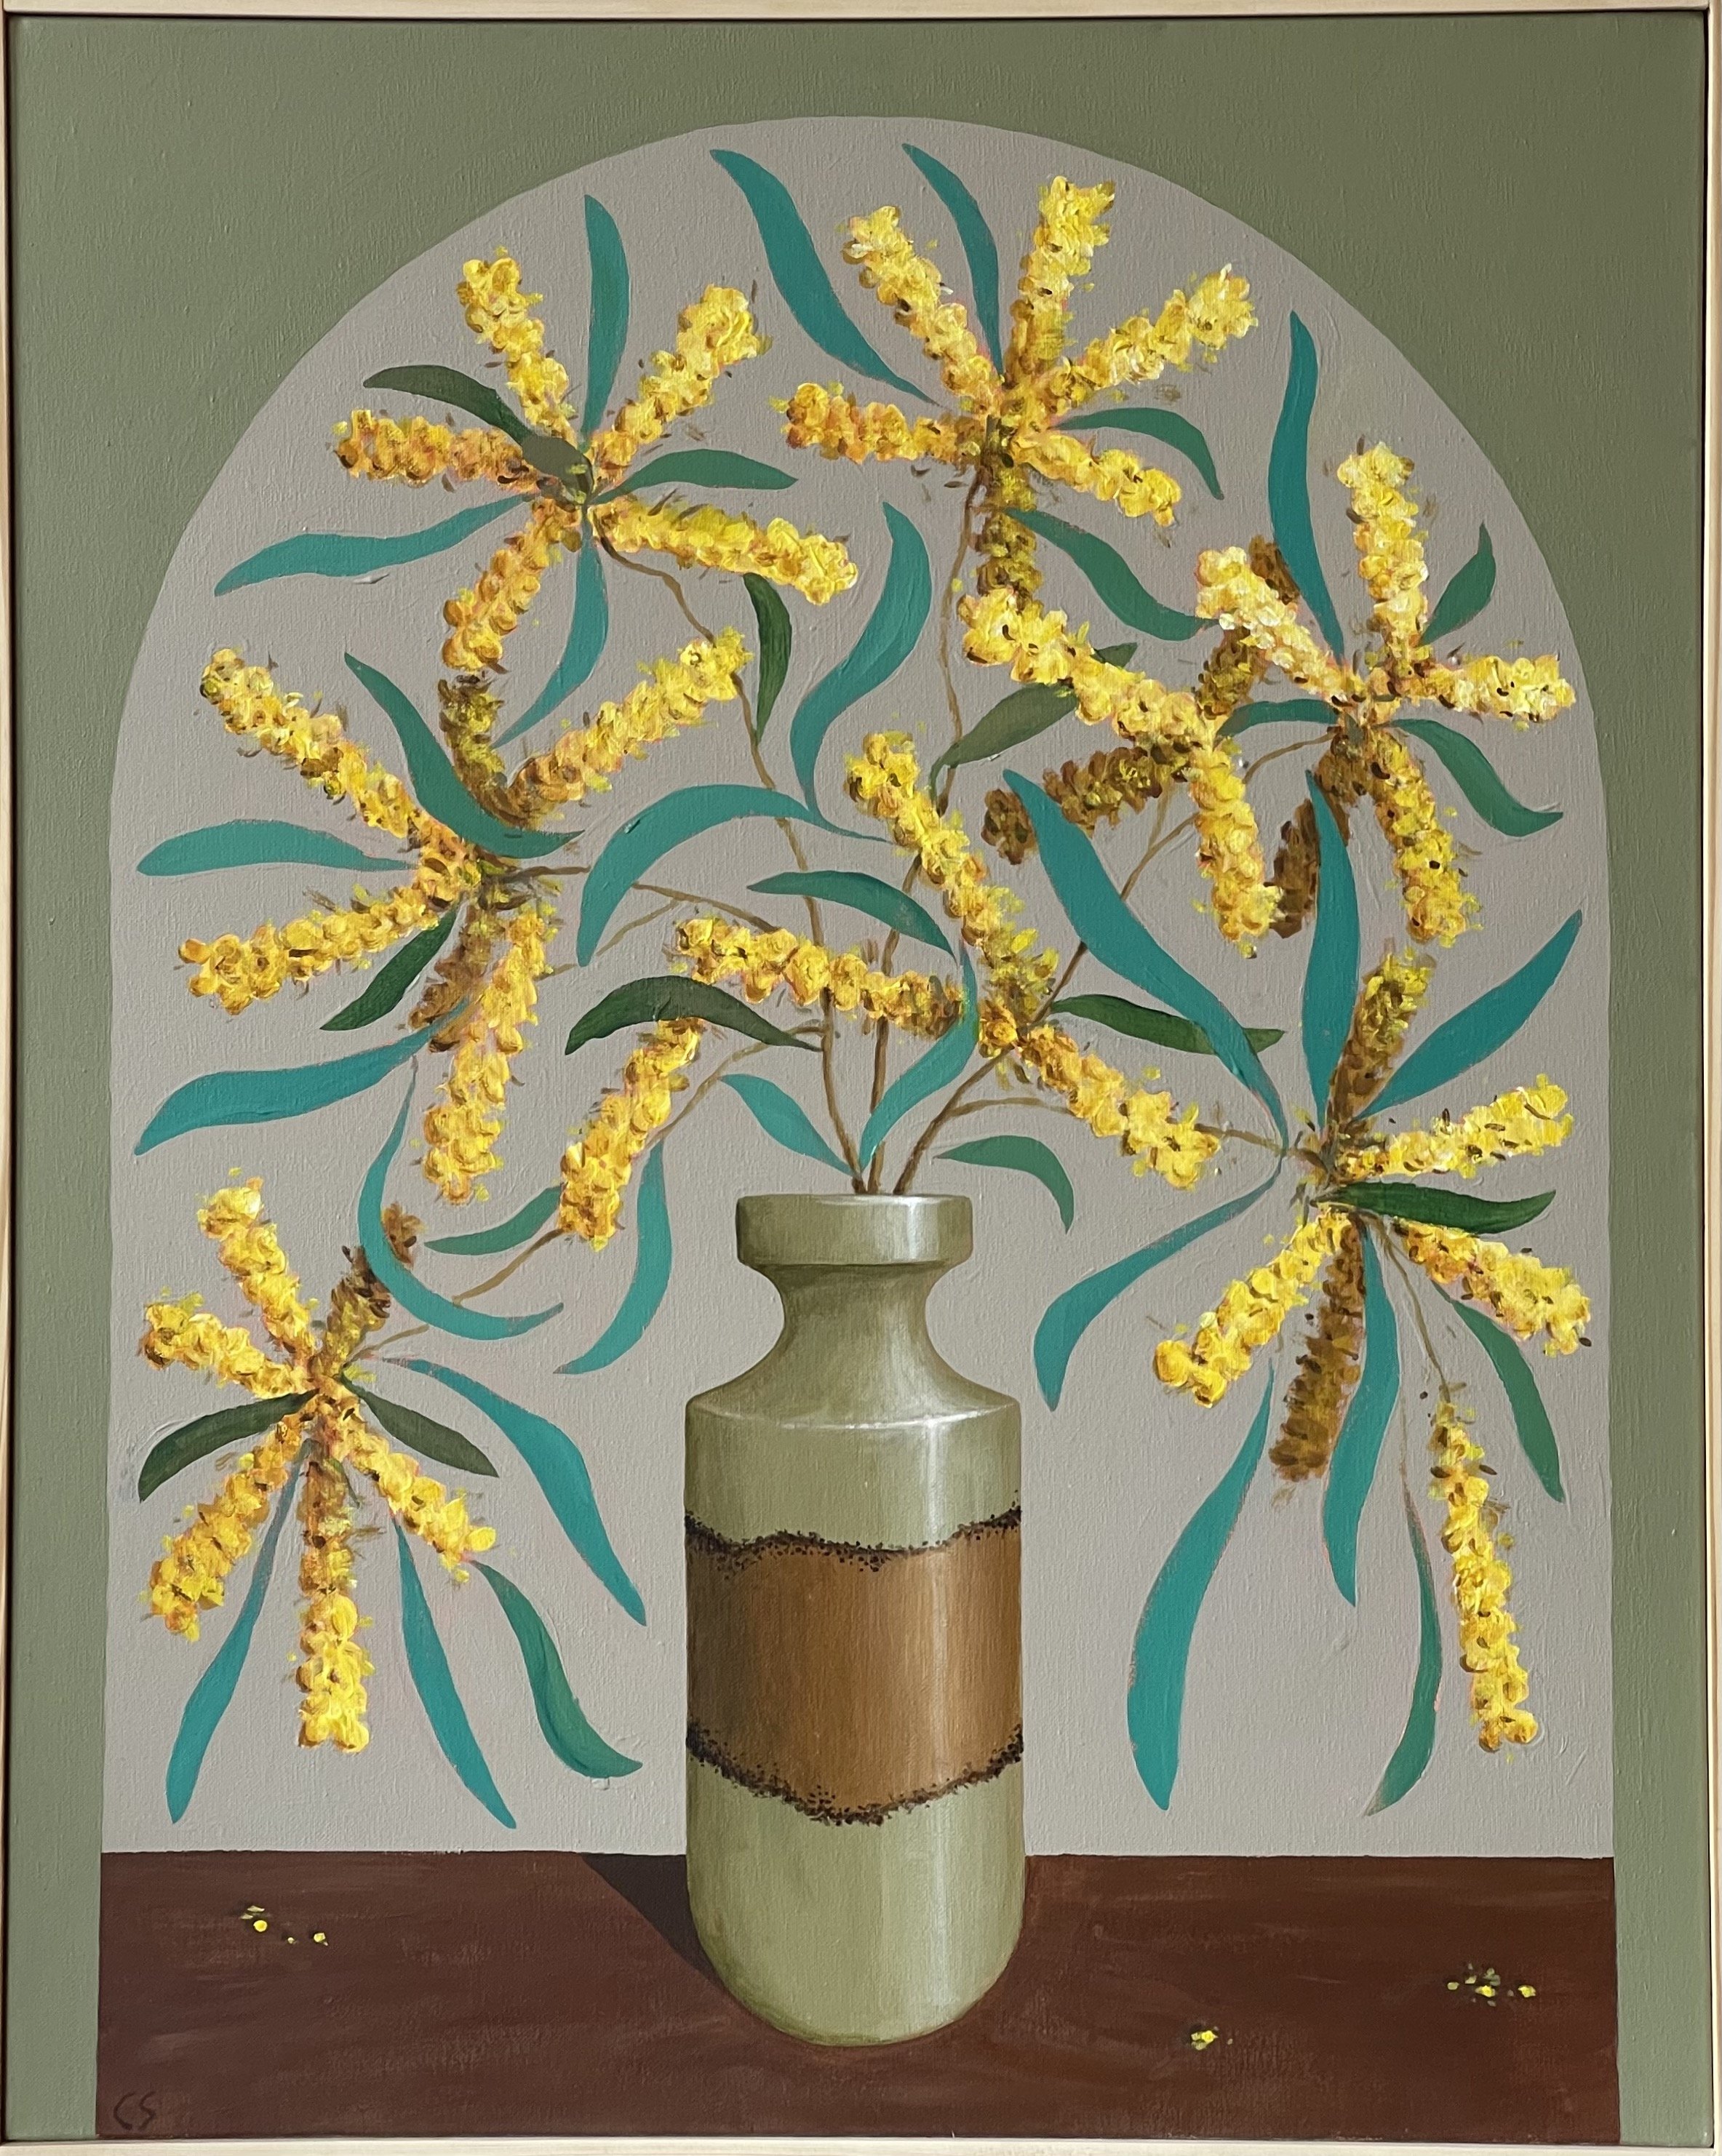 CHARLES SMITH Acacia Blossom 61x76cm framed acrylic on canvas $1550